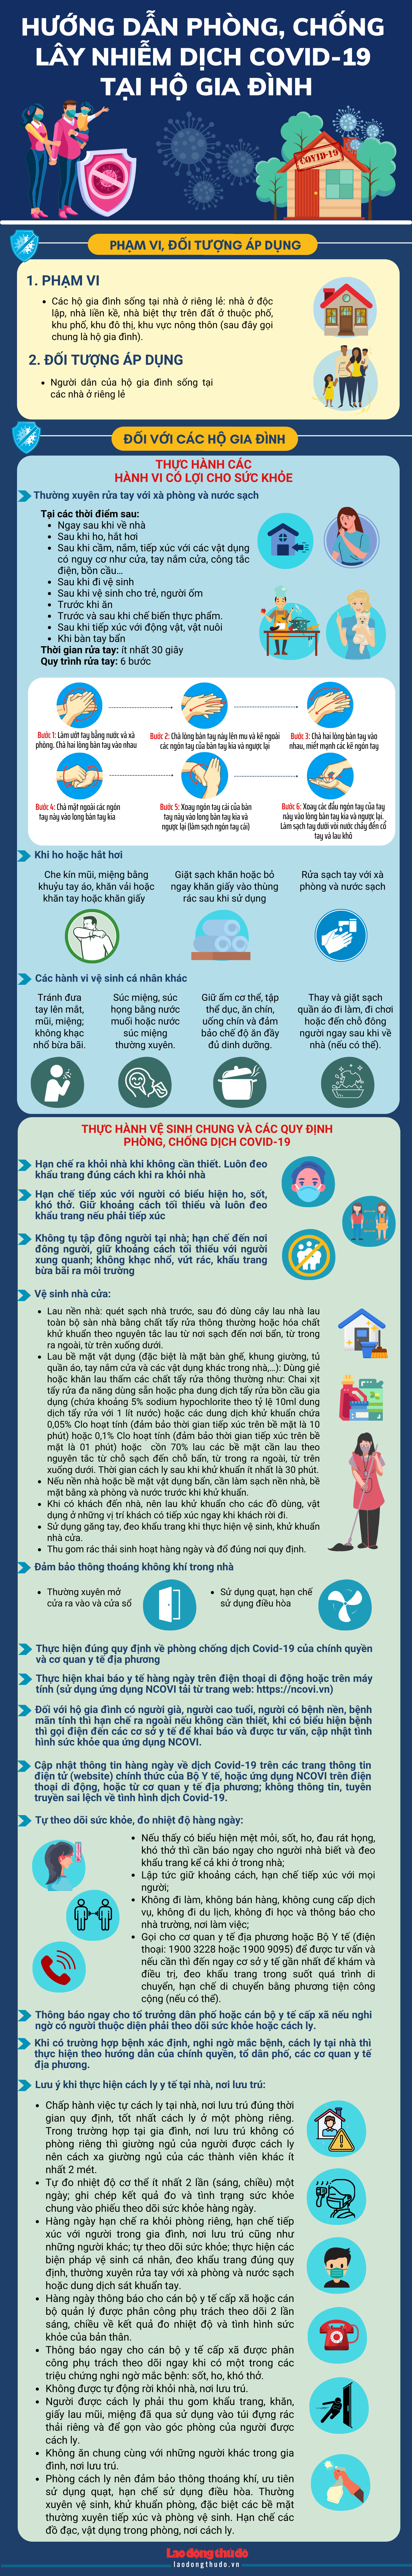 [Infographic] Hướng dẫn phòng, chống và đánh giá nguy cơ lây nhiễm dịch Covid-19 tại hộ gia đình